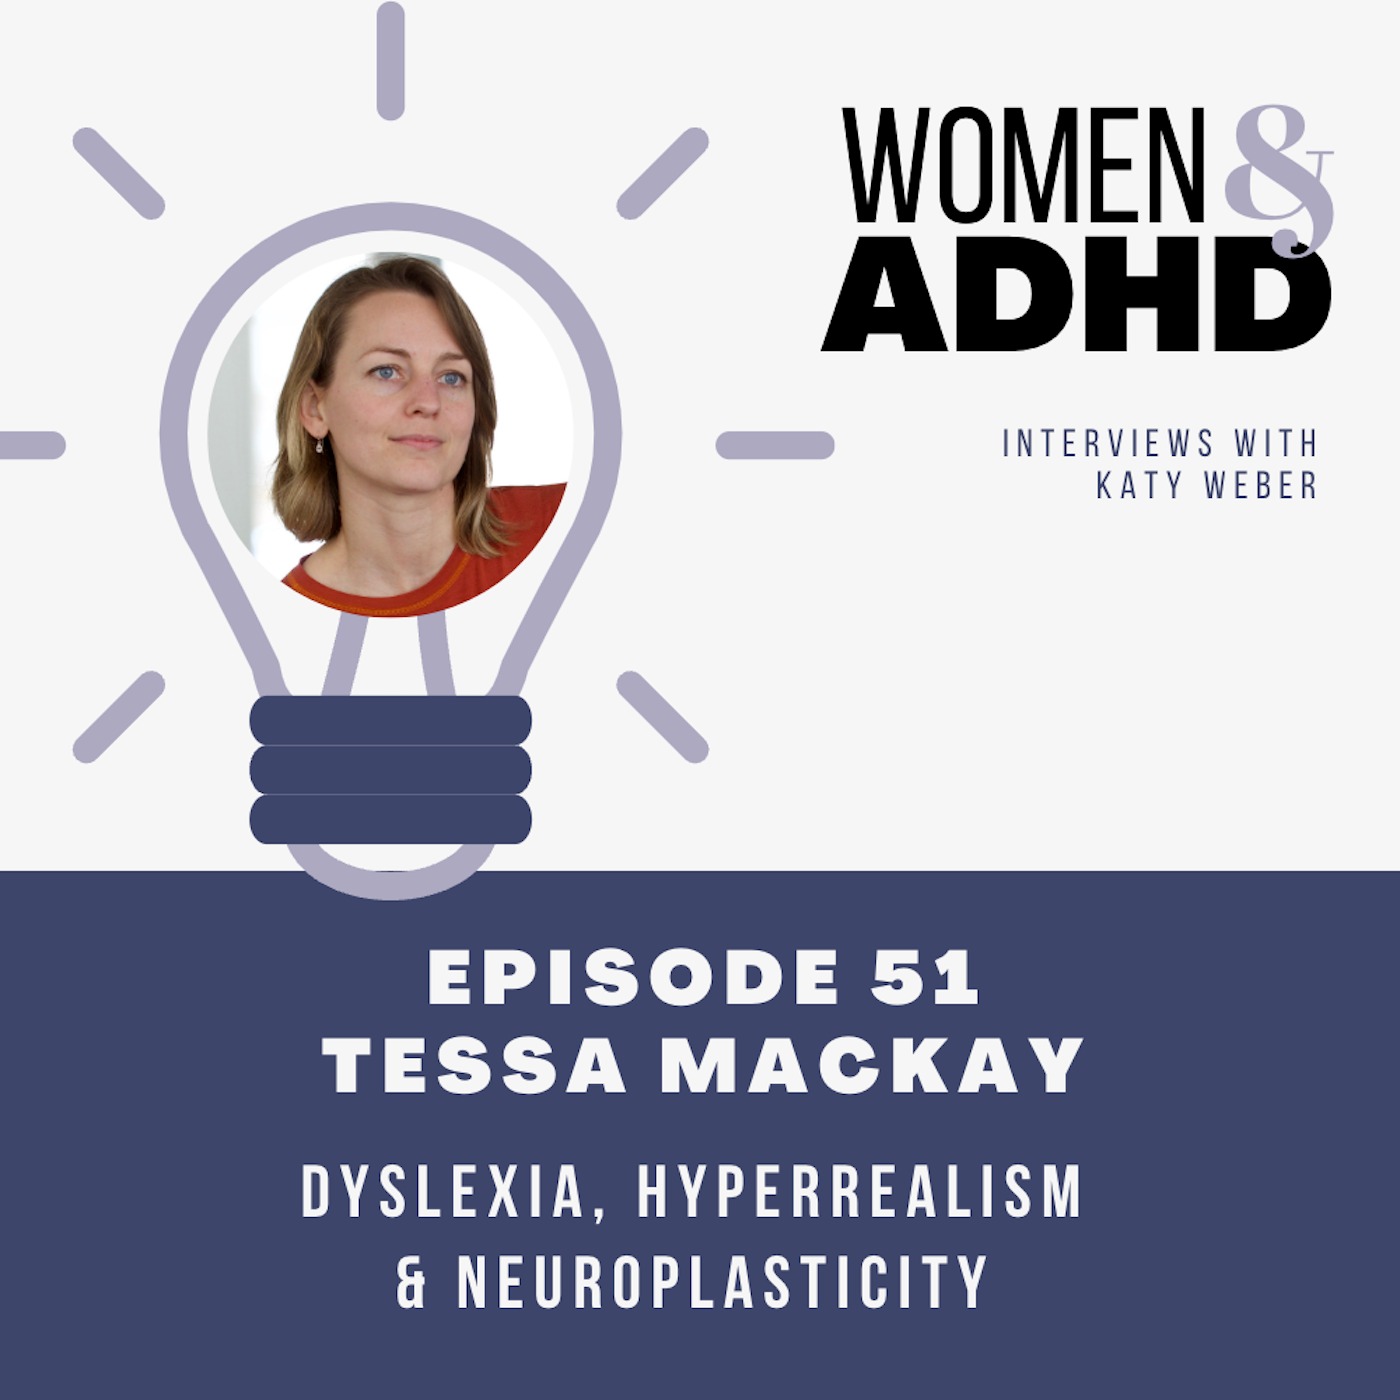 Tessa MacKay: Dyslexia, hyperrealism & neuroplasticity